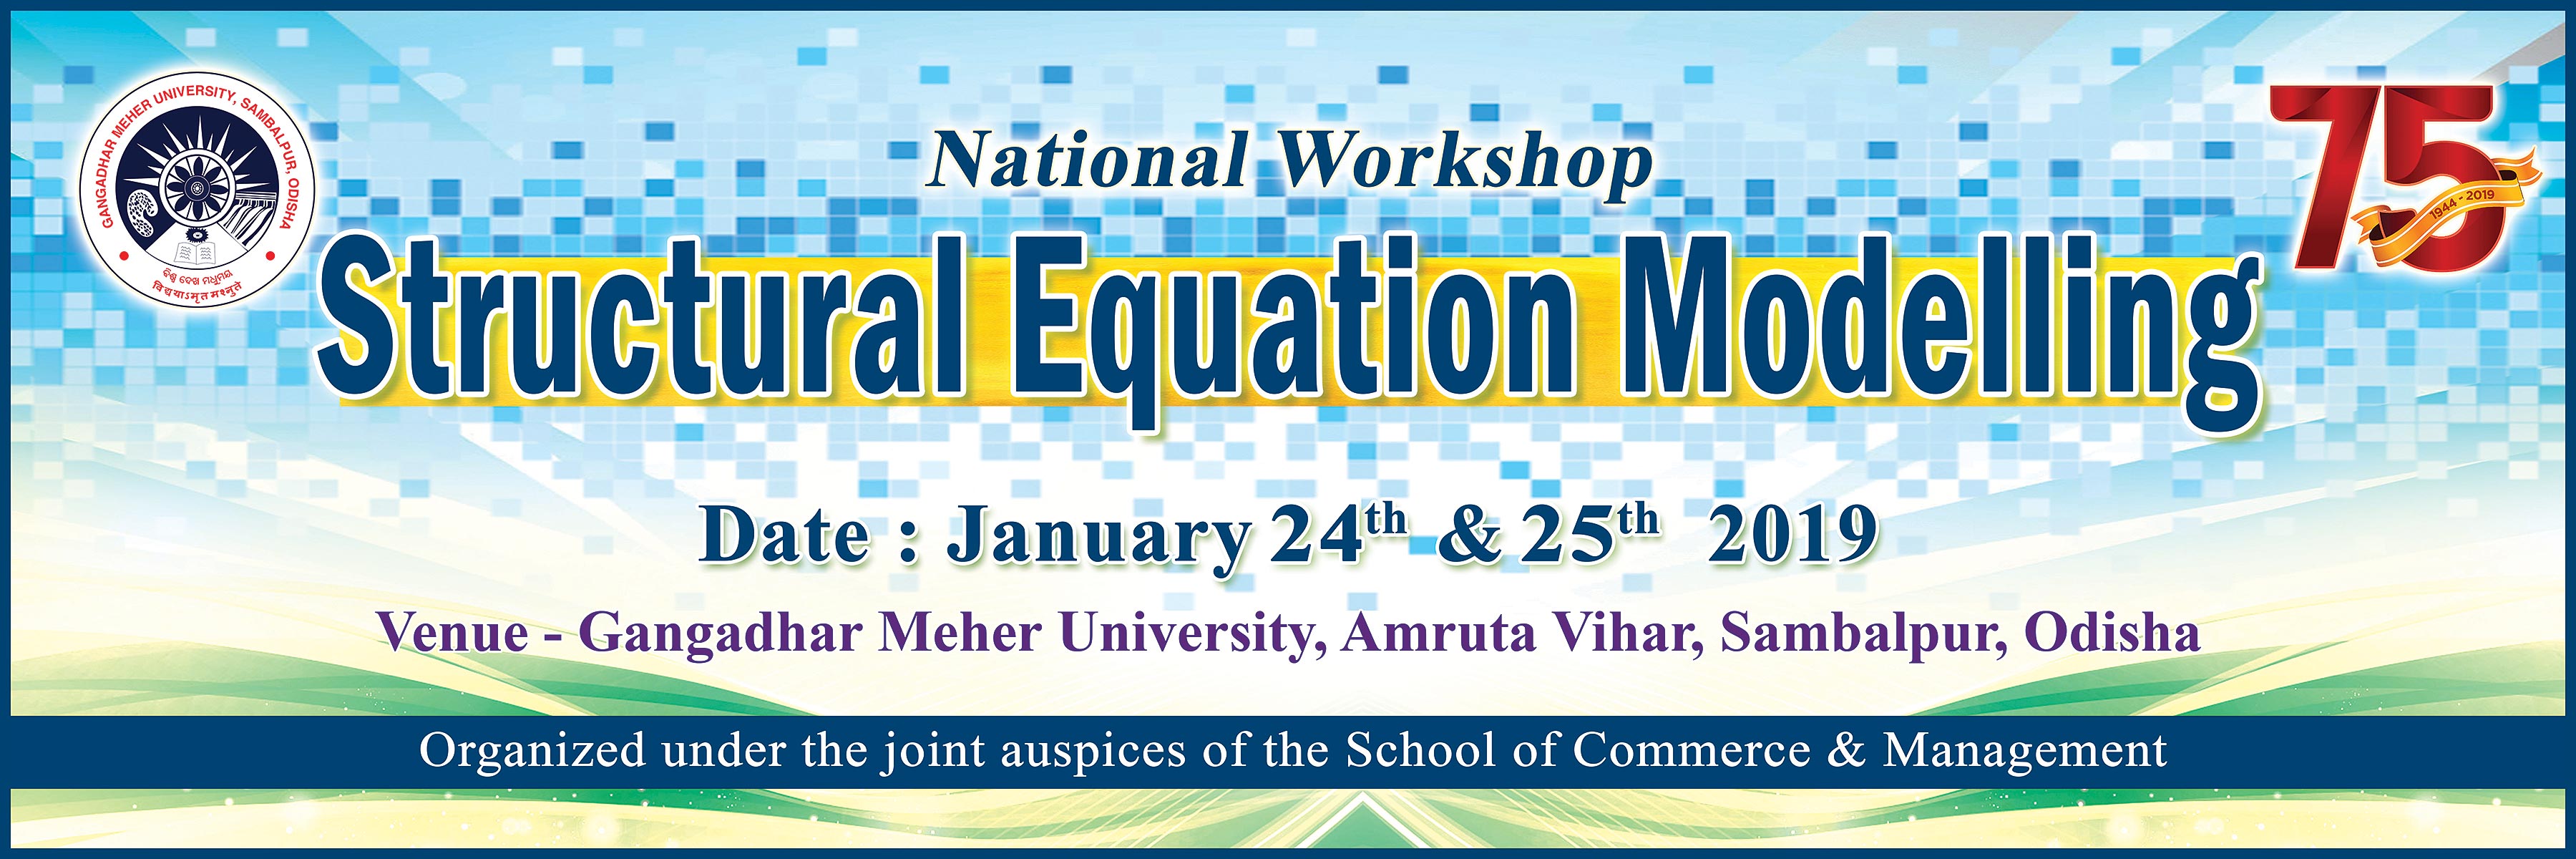 National Workshop on Structural Equation Modeling